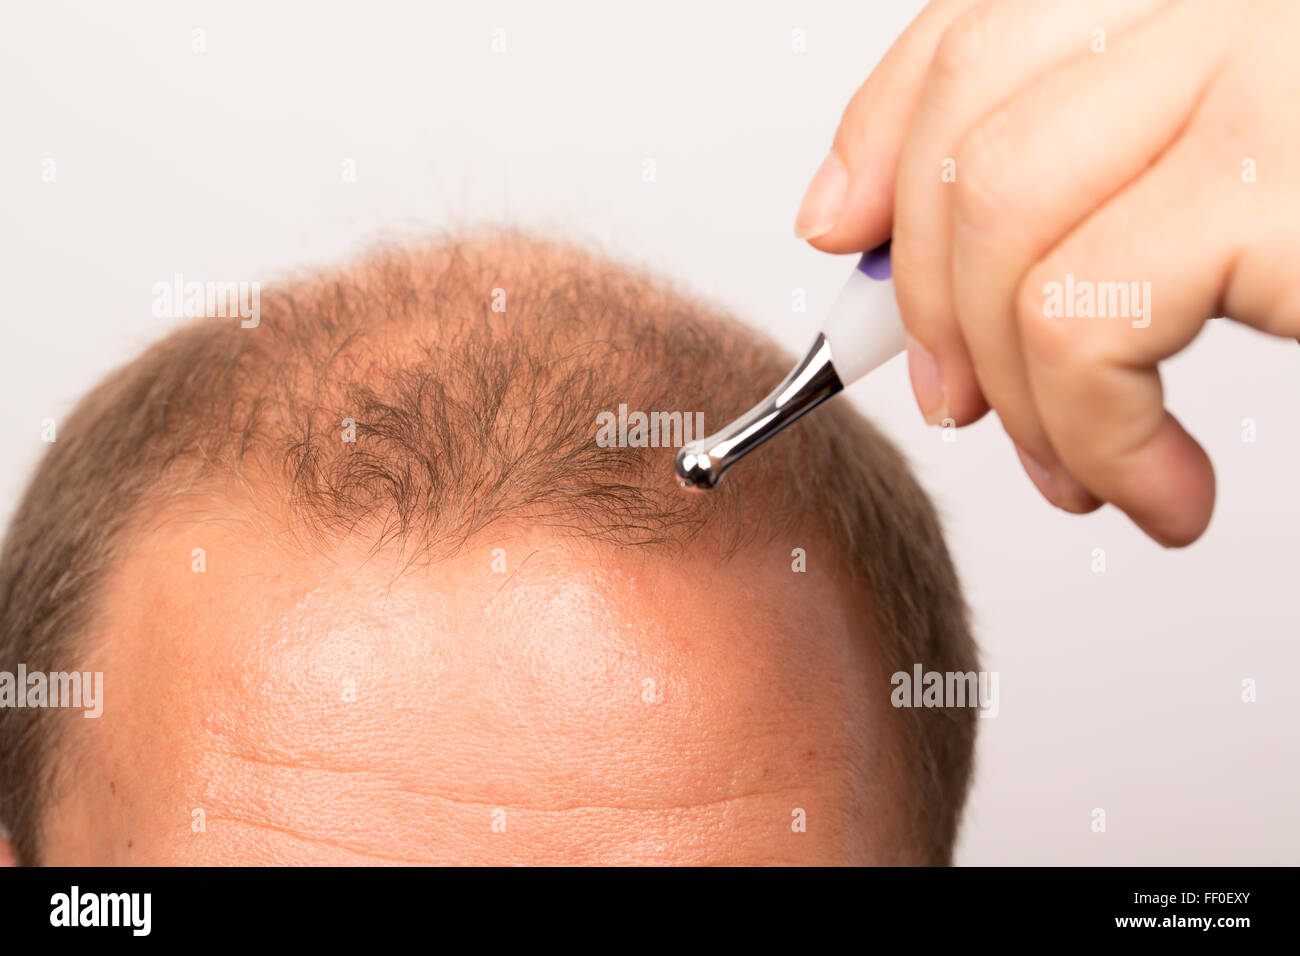 man controls hair loss stress alopecia cancer treatment Stock Photo - Alamy